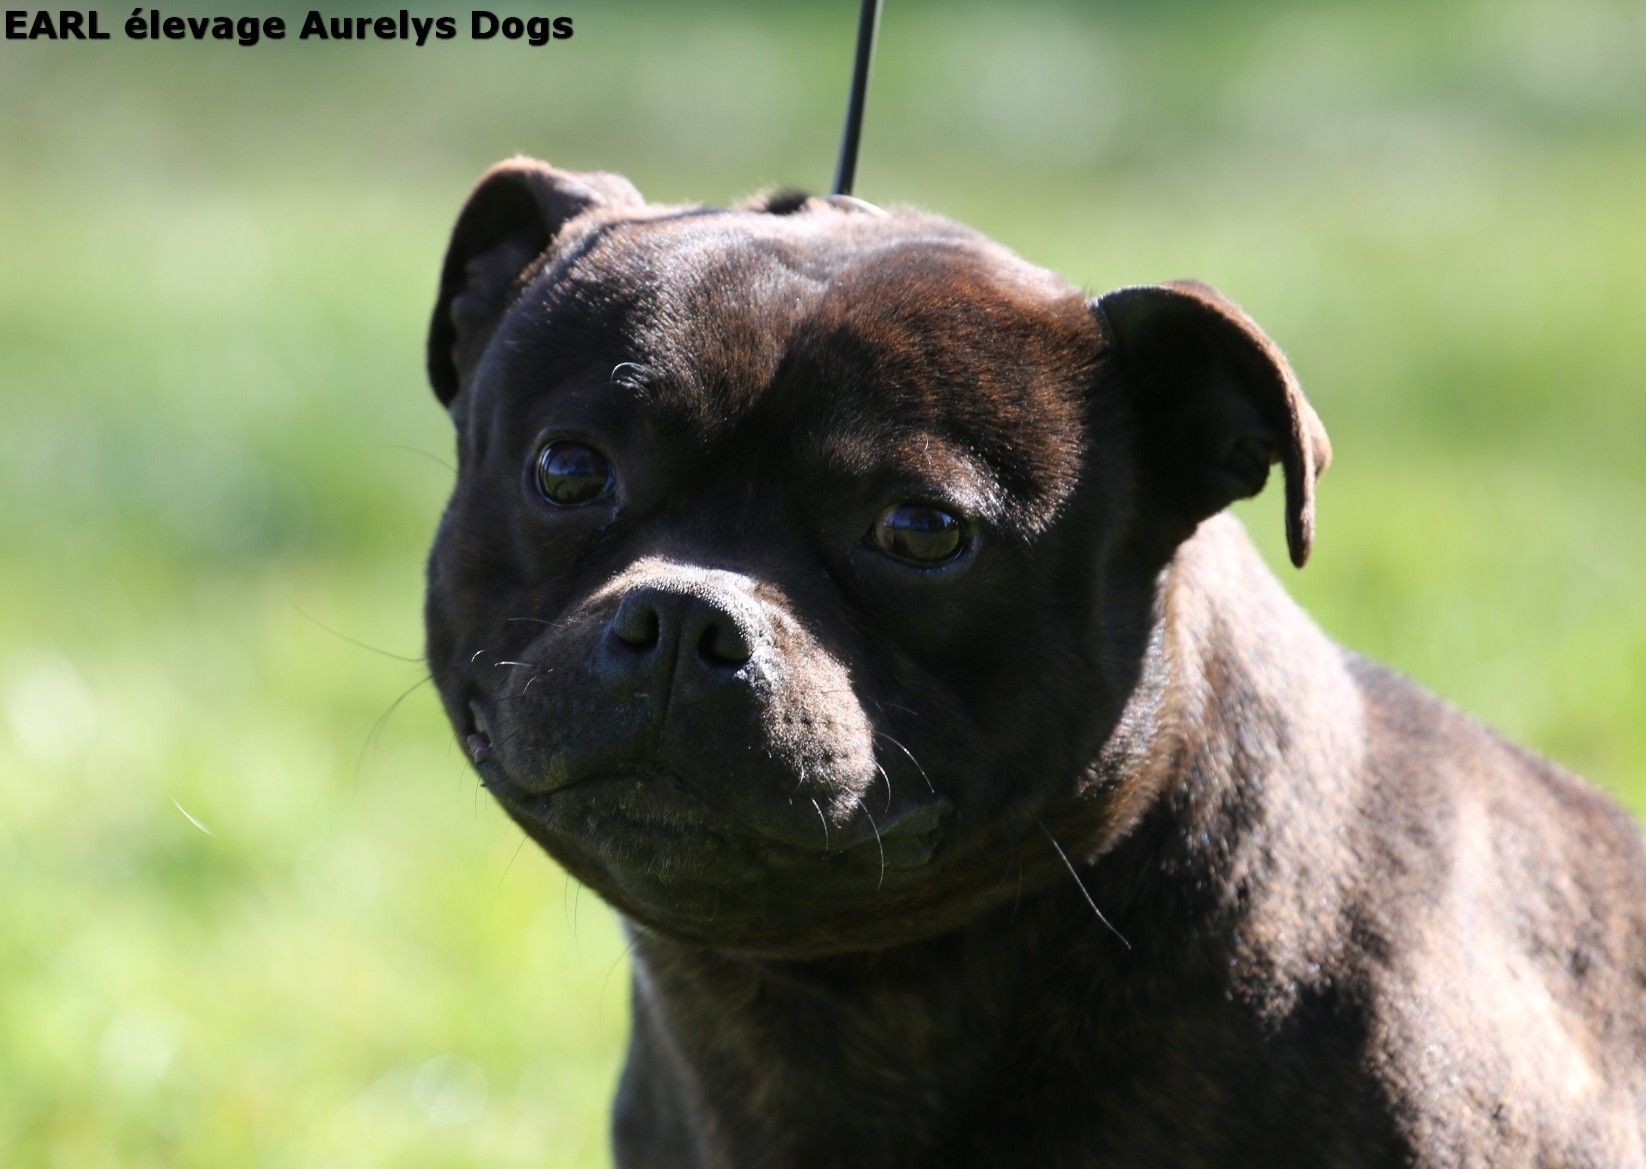 Publication : Aurely's Dogs Auteur : EARL élevage Aurelys Dogs